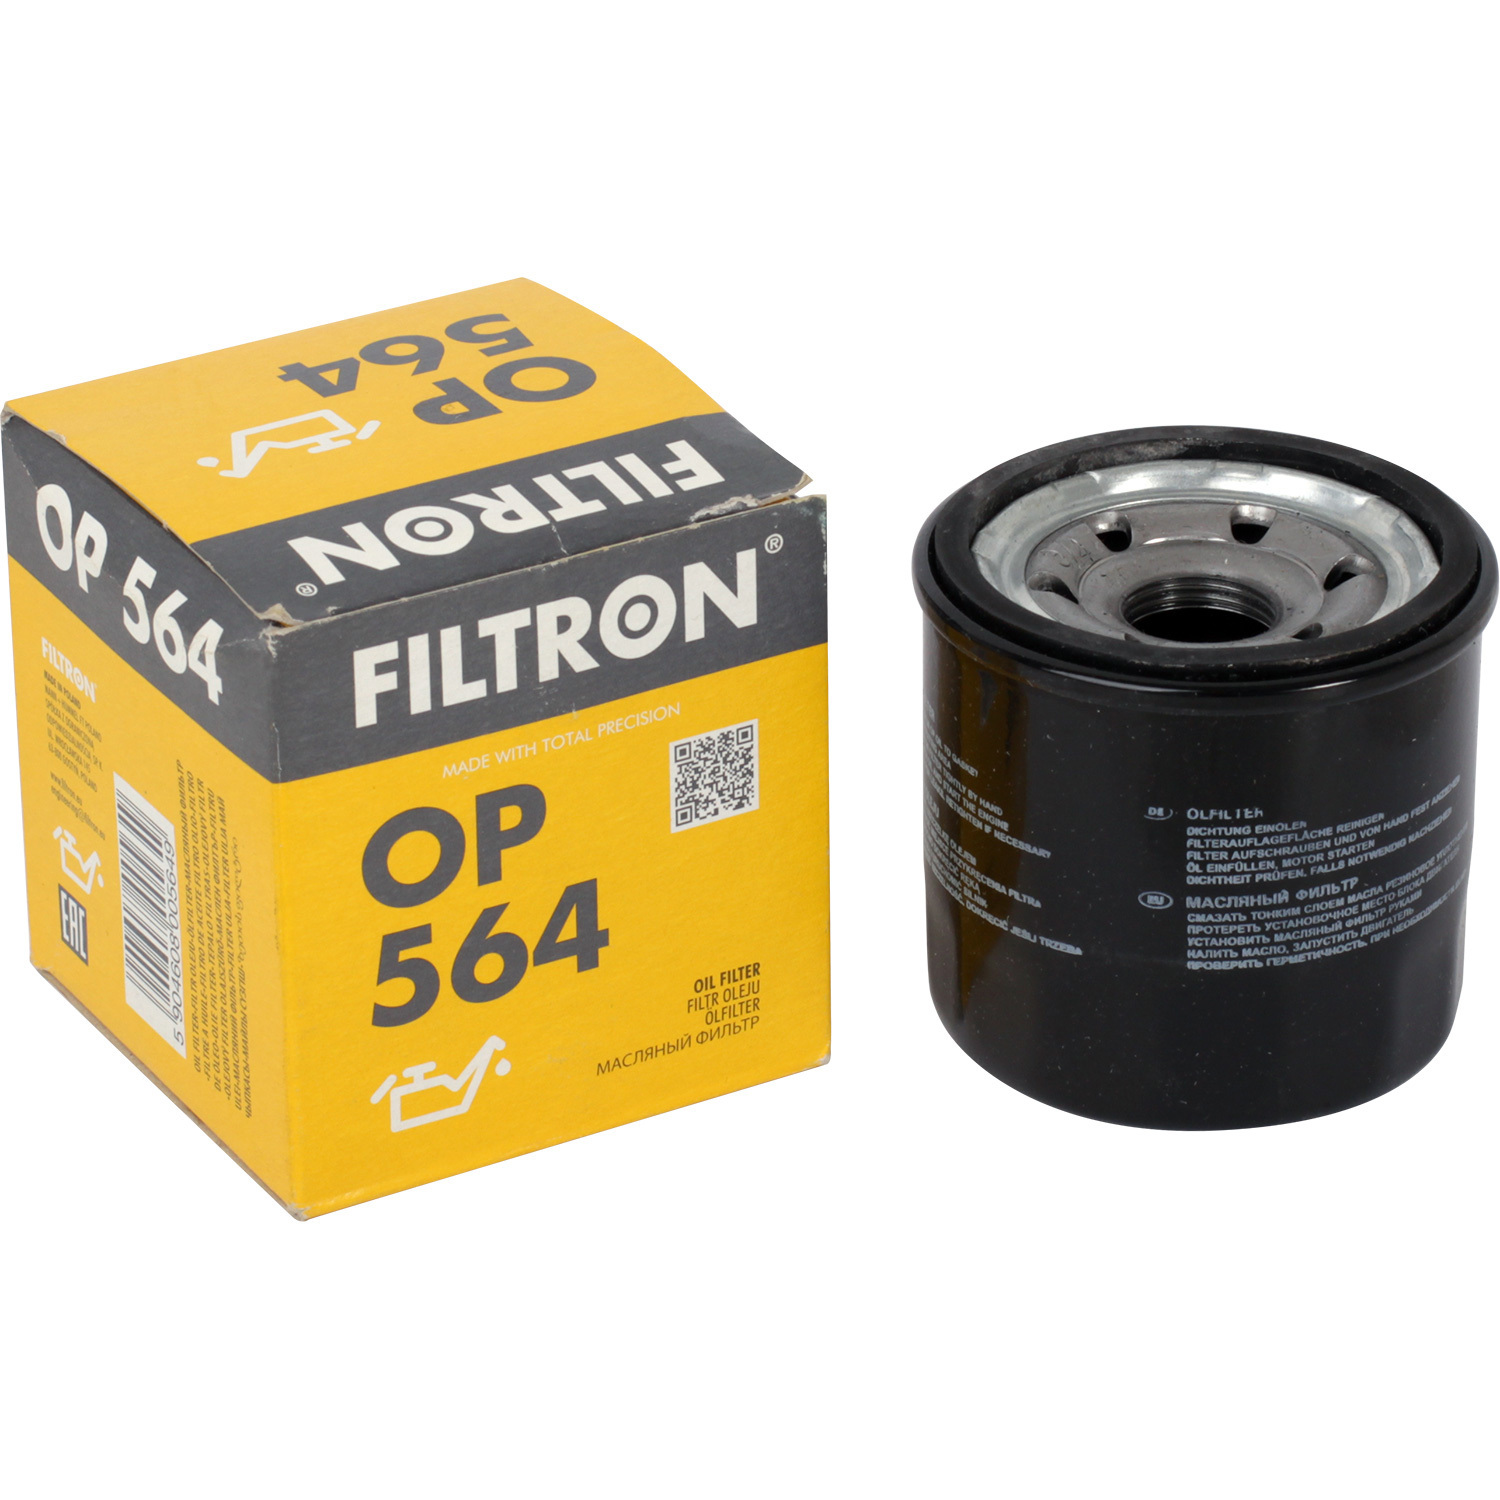 Фильтры Filtron Фильтр масляный Filtron OP564 фильтры filtron фильтр масляный filtron oe6852